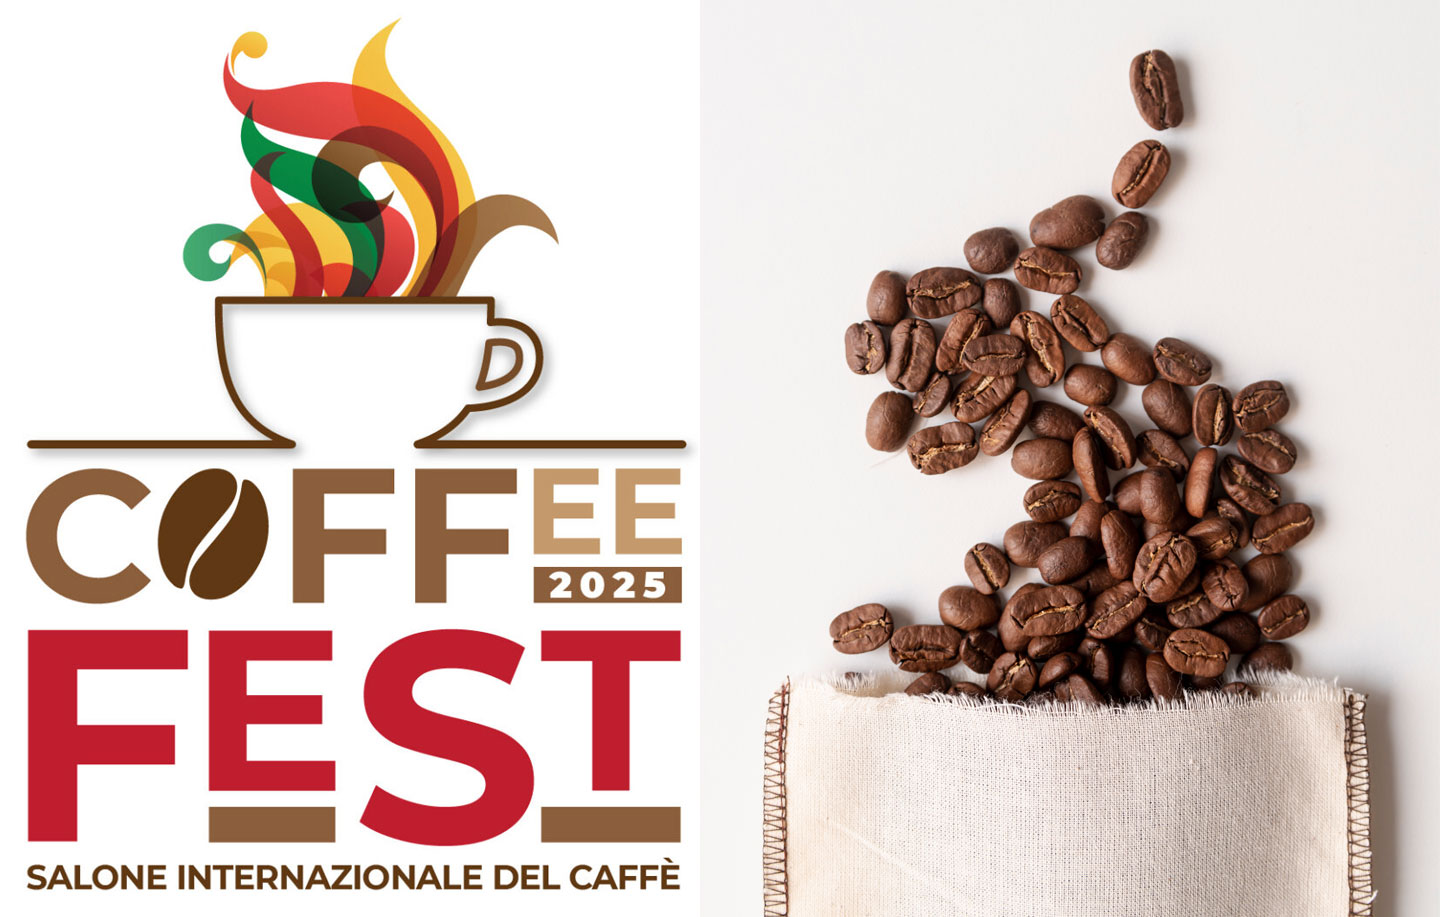 Tutti pronti per il Coffee Fest? Al via la prima edizione del Salone Internazionale del Caffè!